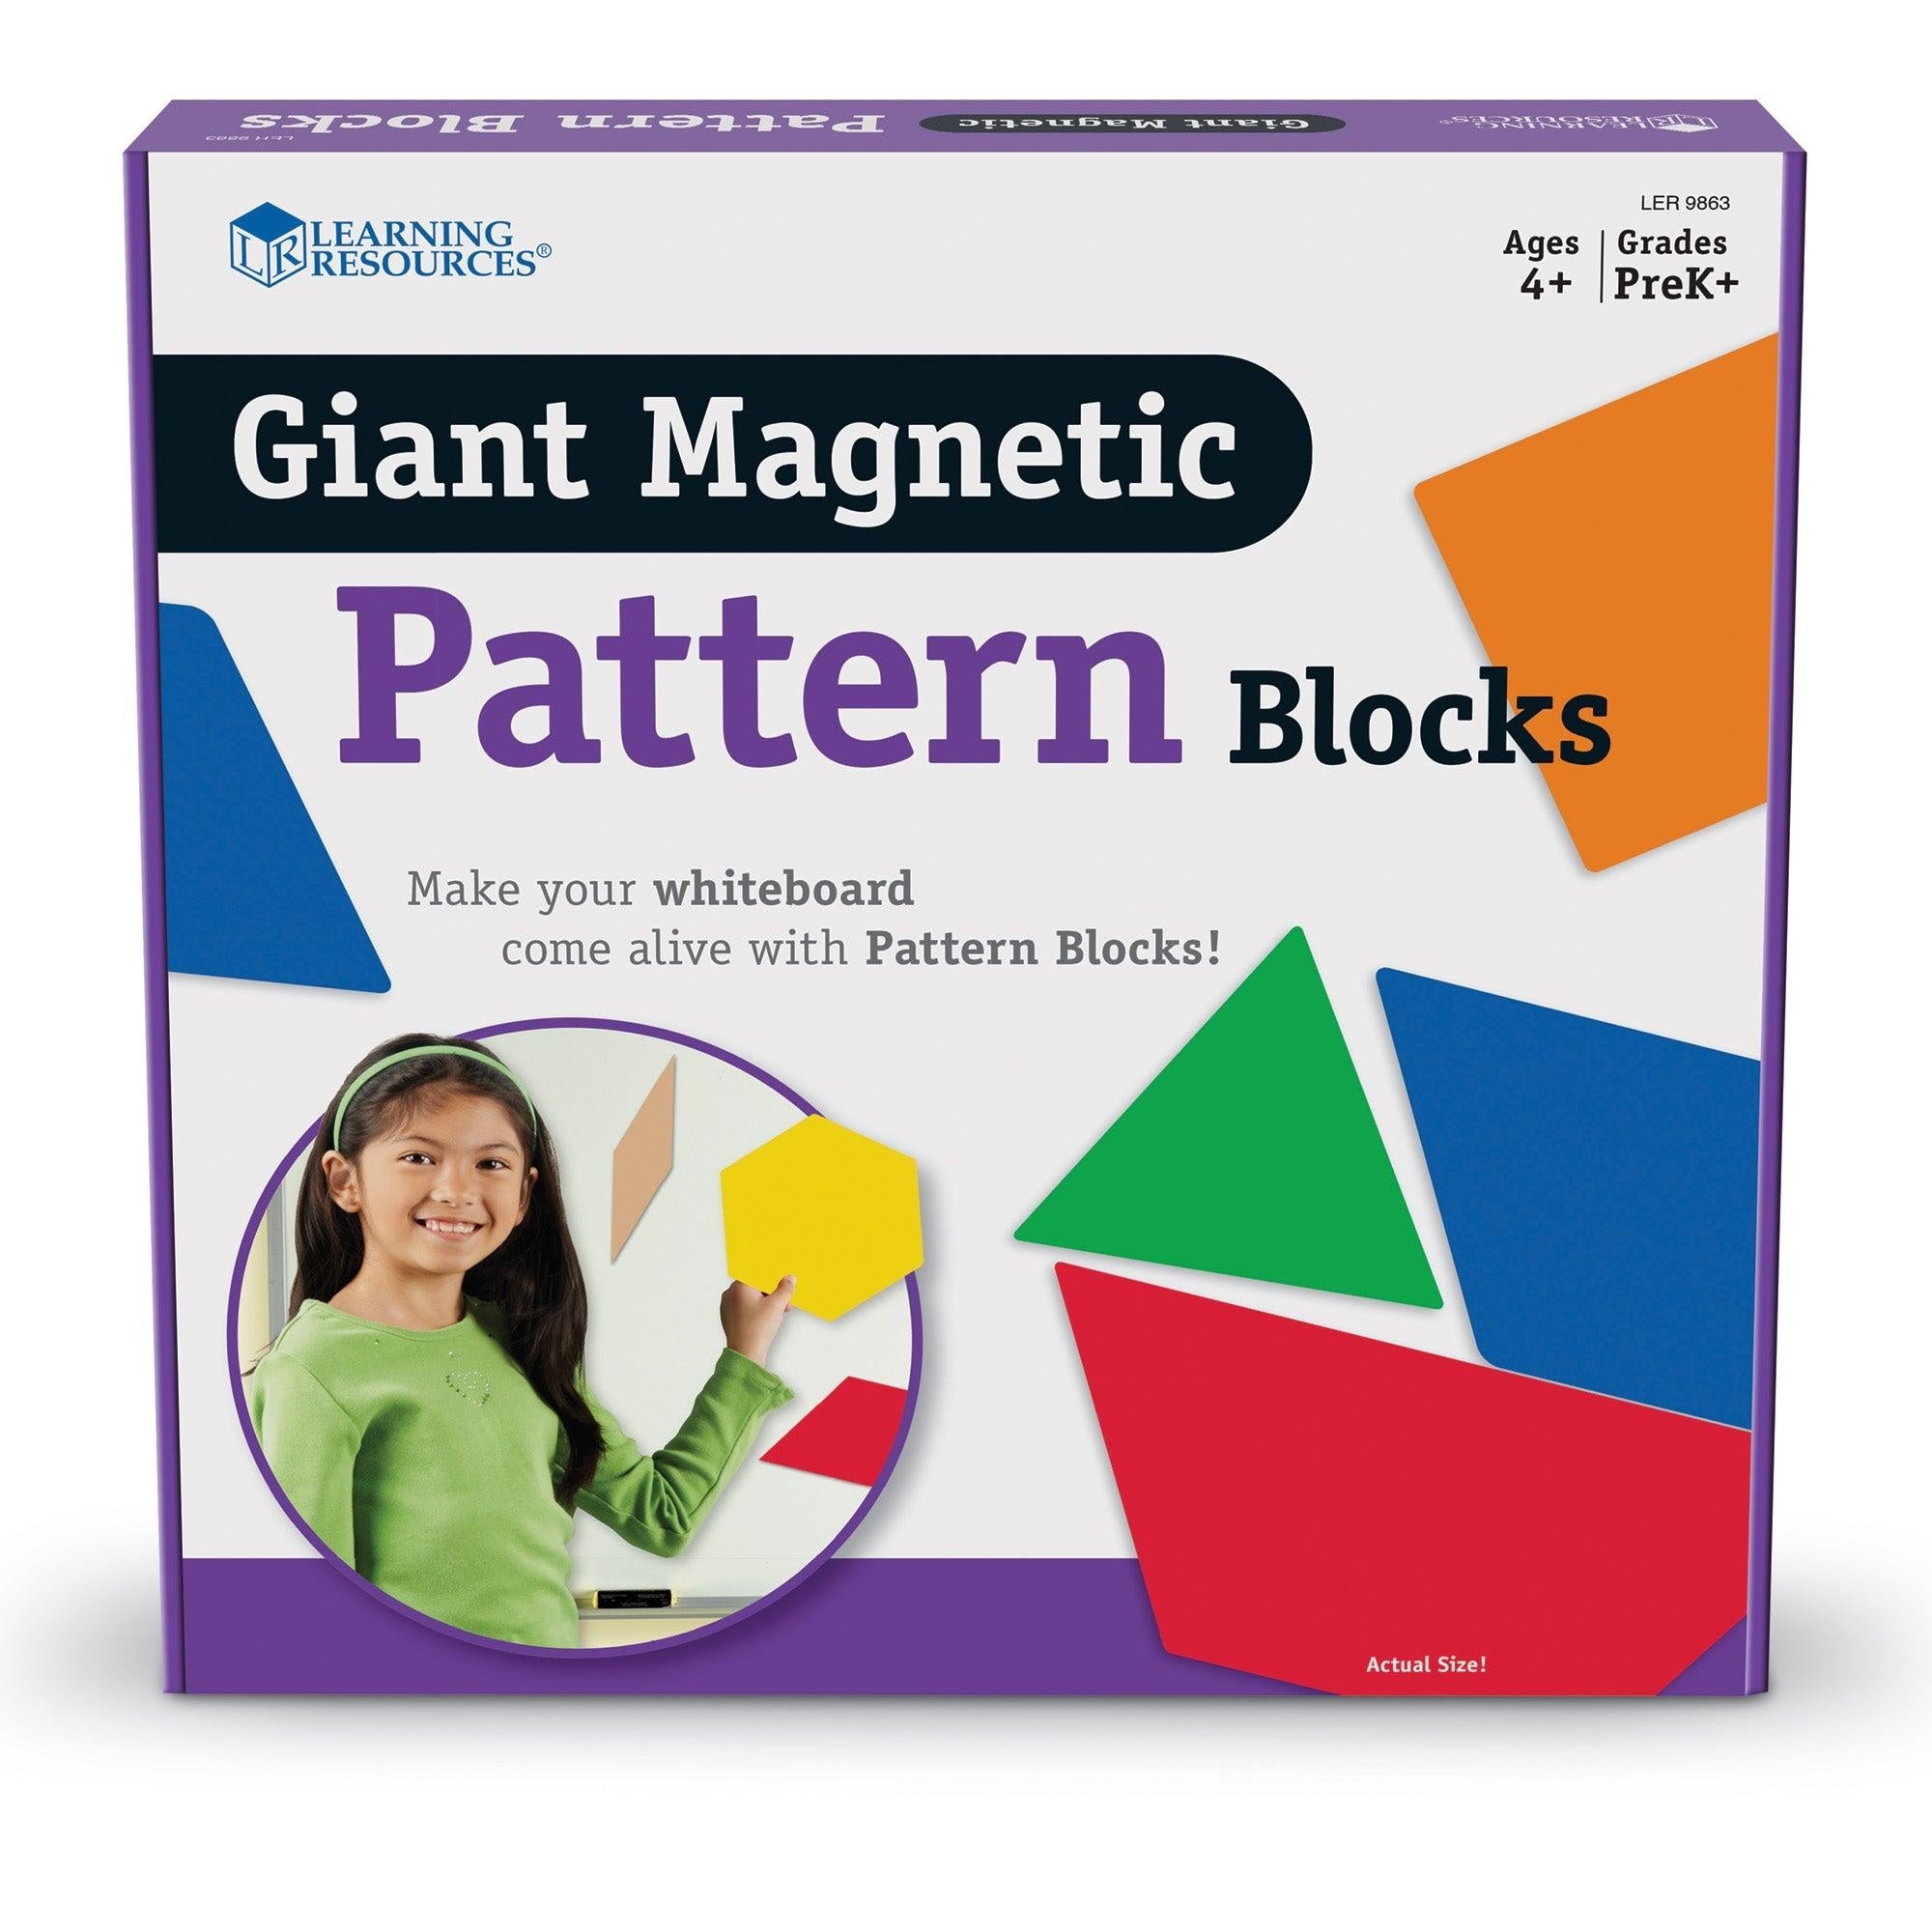 Grote magnetische patroonblokken